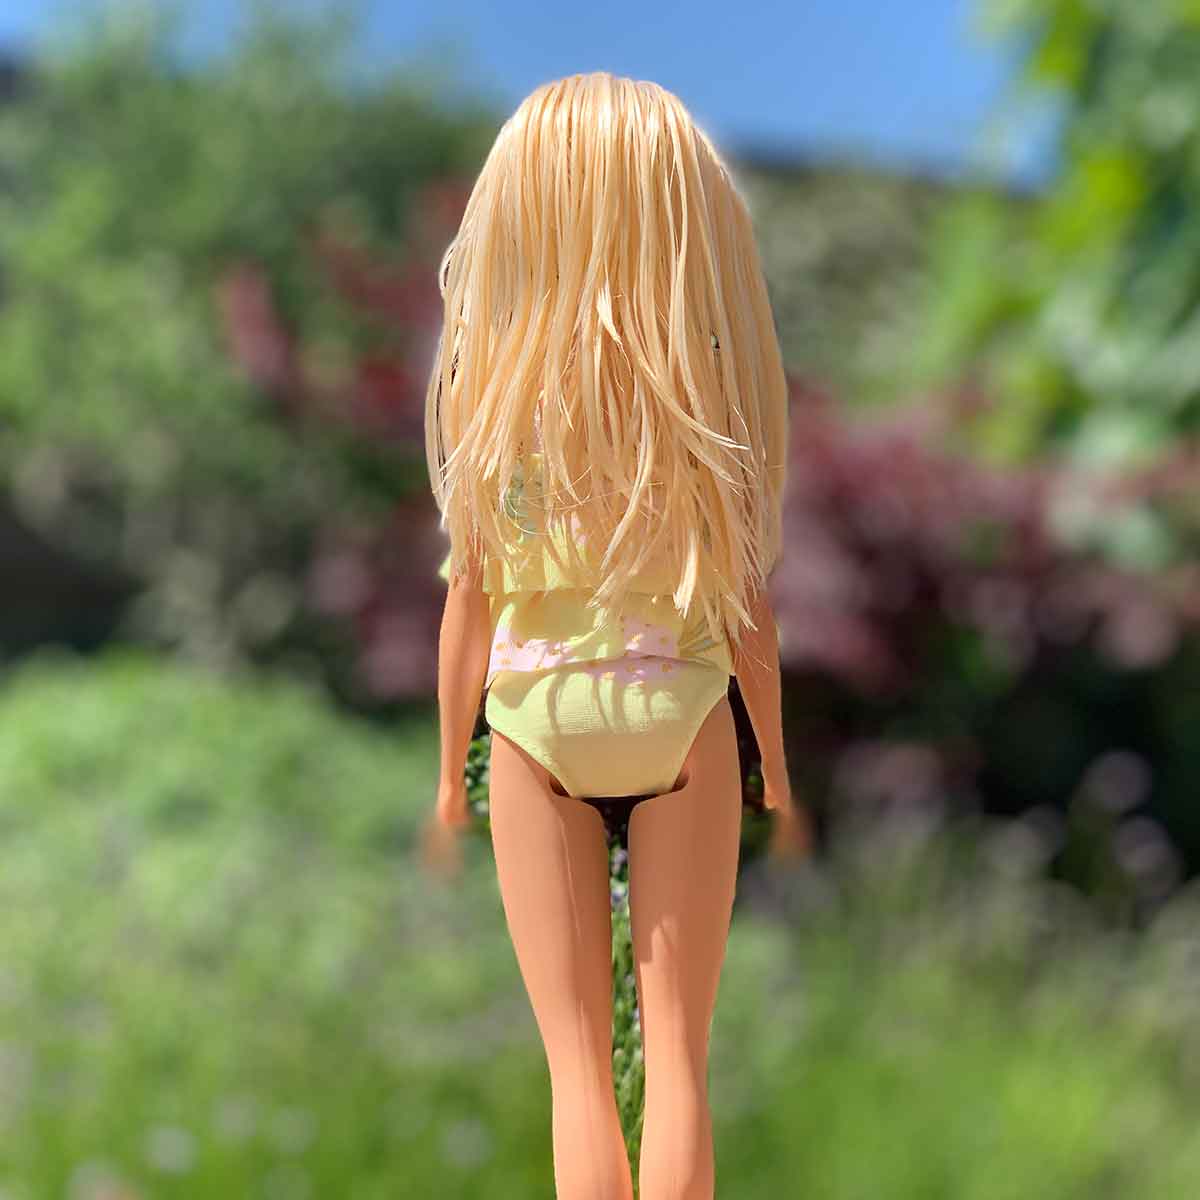 Barbie bikini lichtgeel met witte vlakken met gele stippen